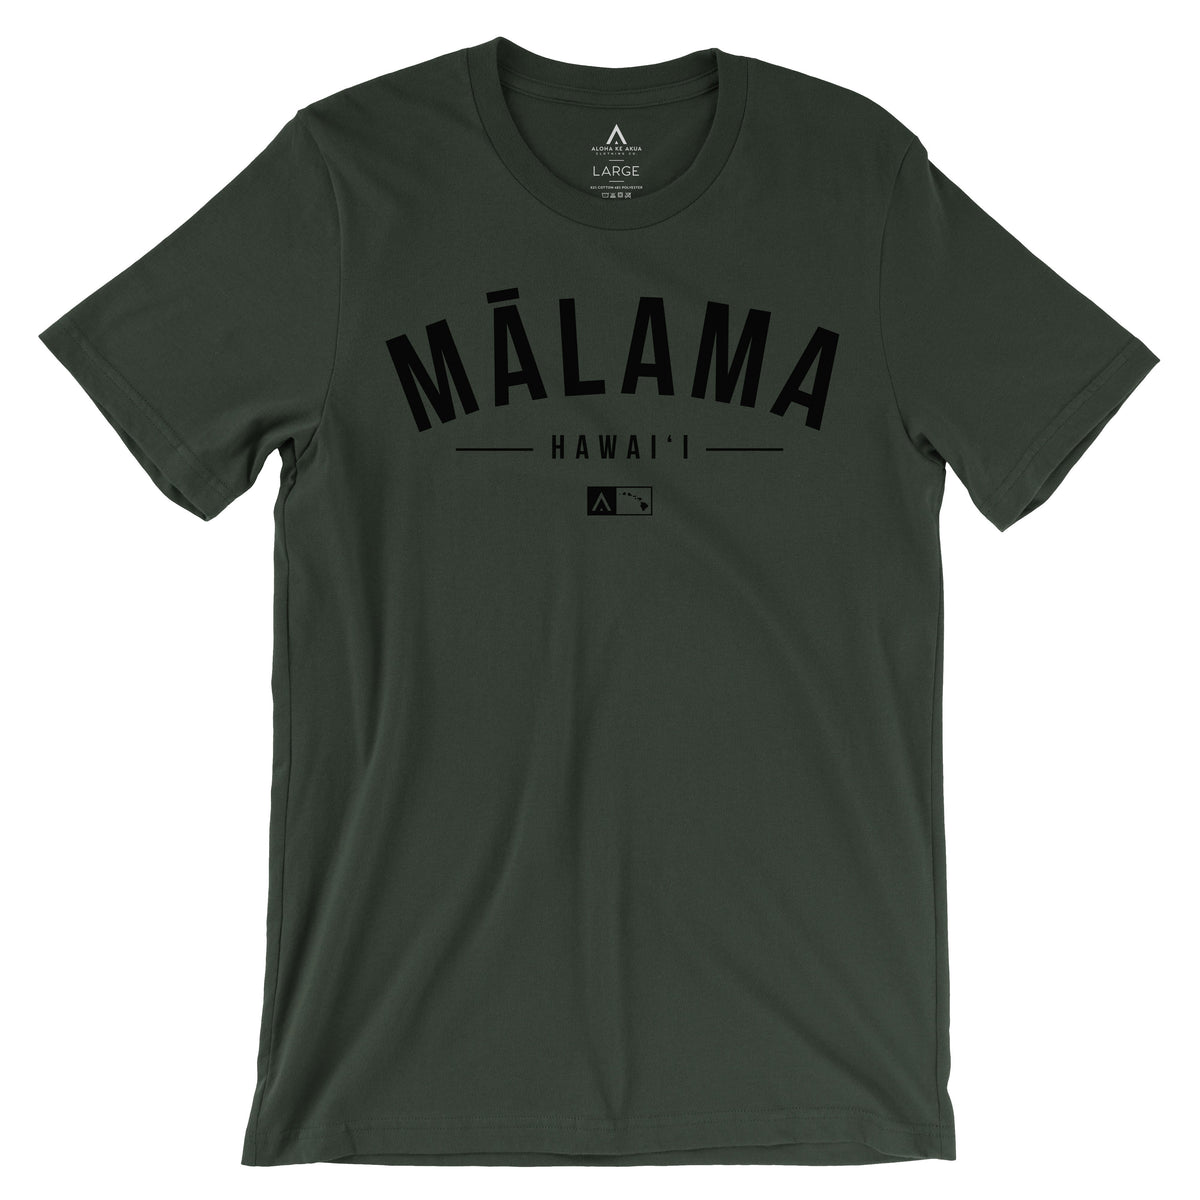 Pop-Up Mākeke - Aloha ke Akua Clothing - Mālama HI Short Sleeve T-Shirt - Dark Olive